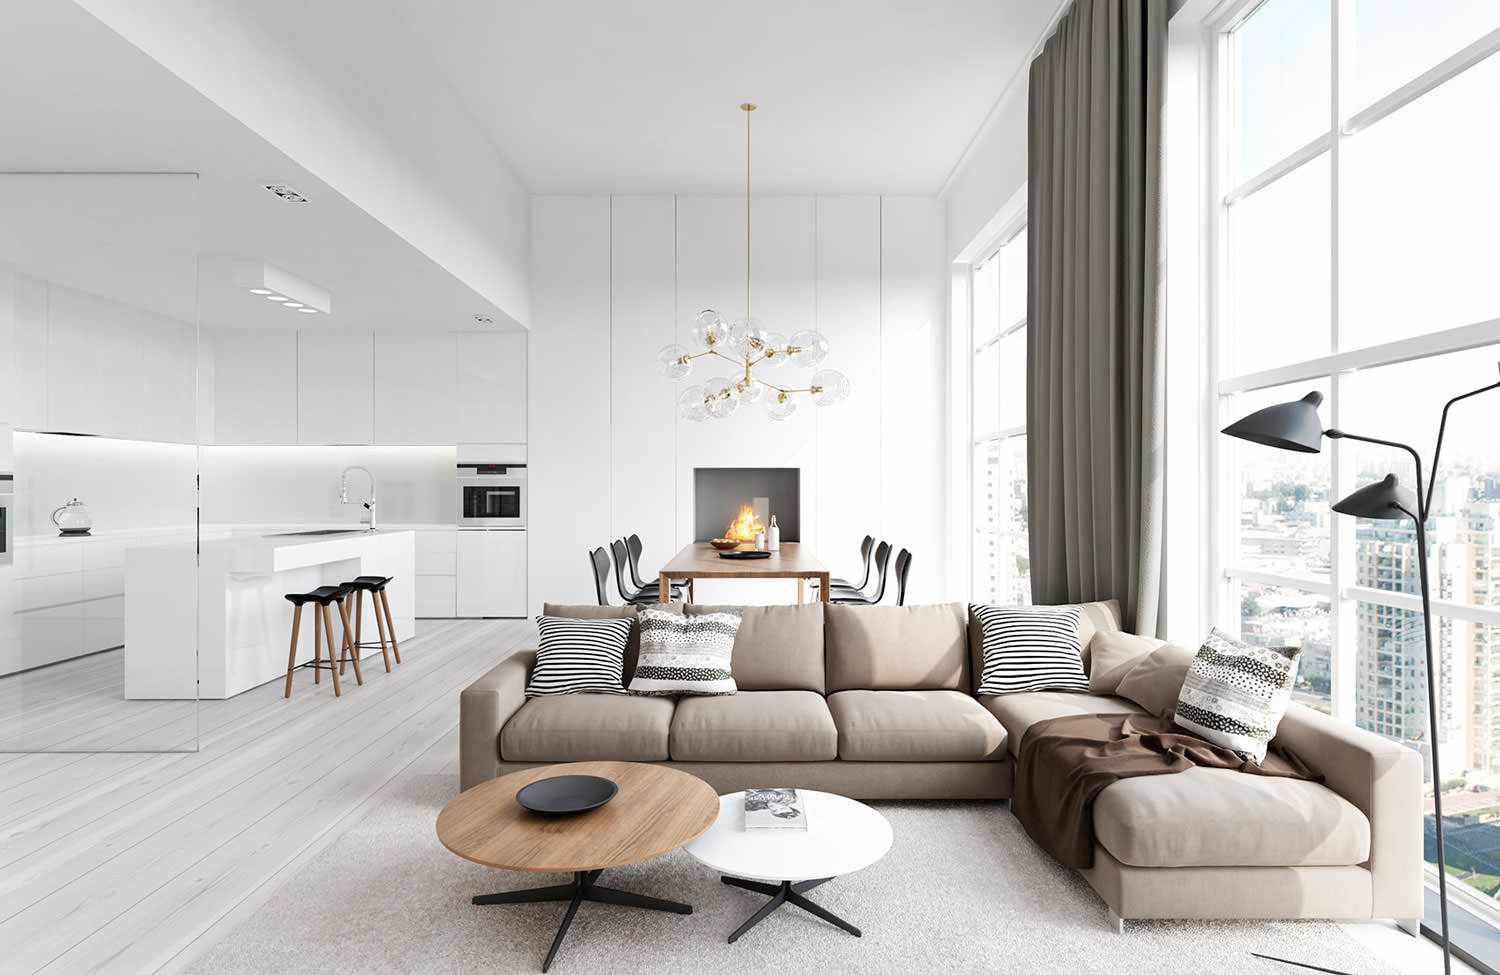 változata alkalmazás egy gyönyörű design egy nappali stílusában a minimalizmus